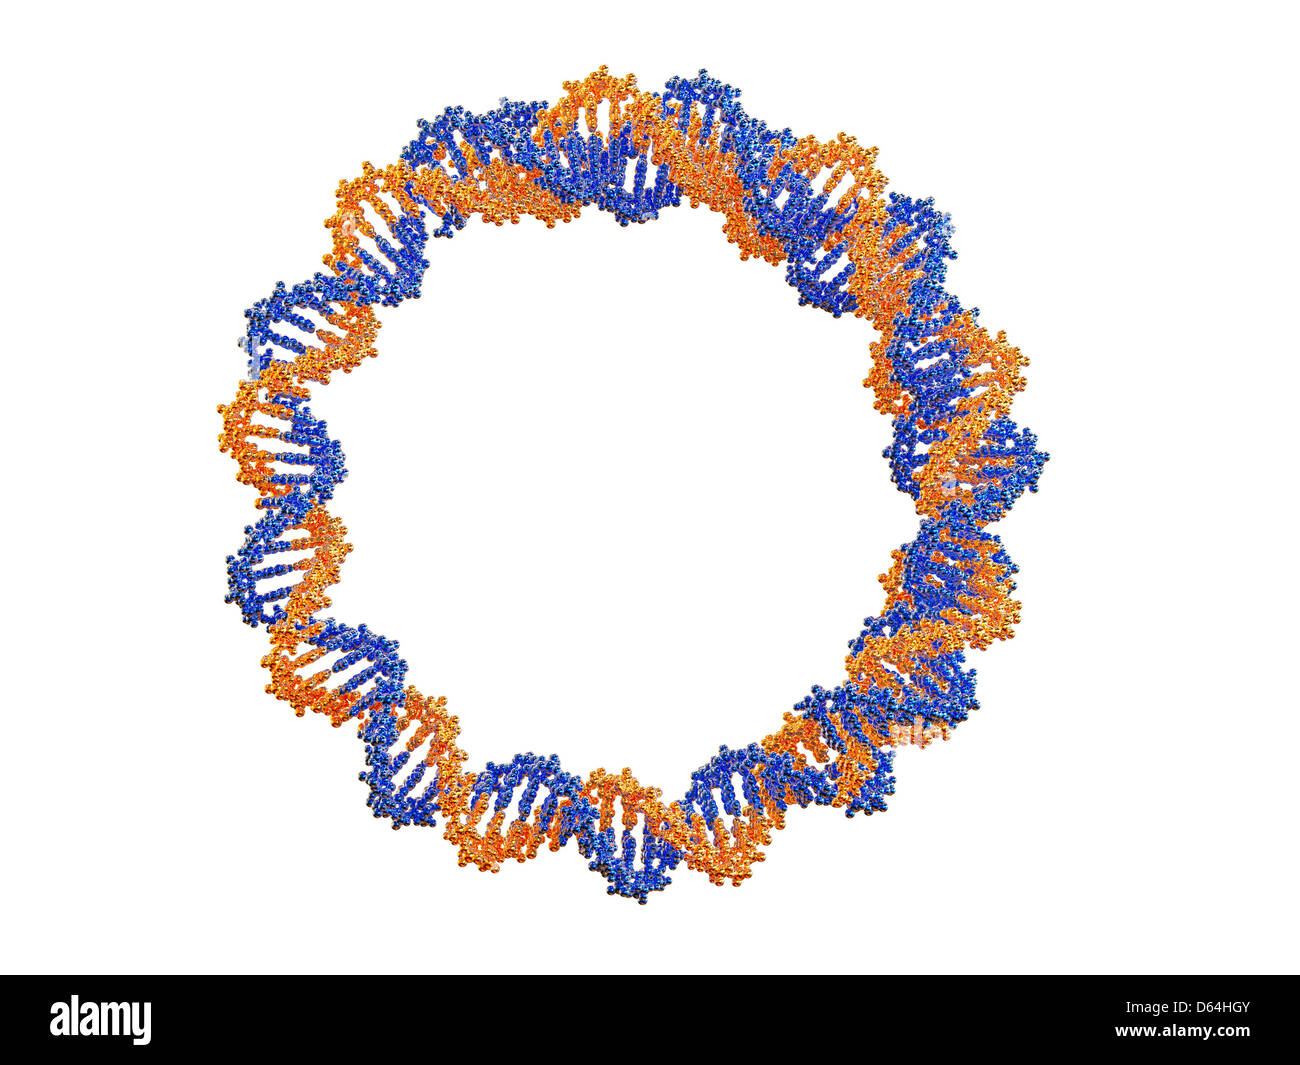 Circular DNA molecule, artwork Stock Photo